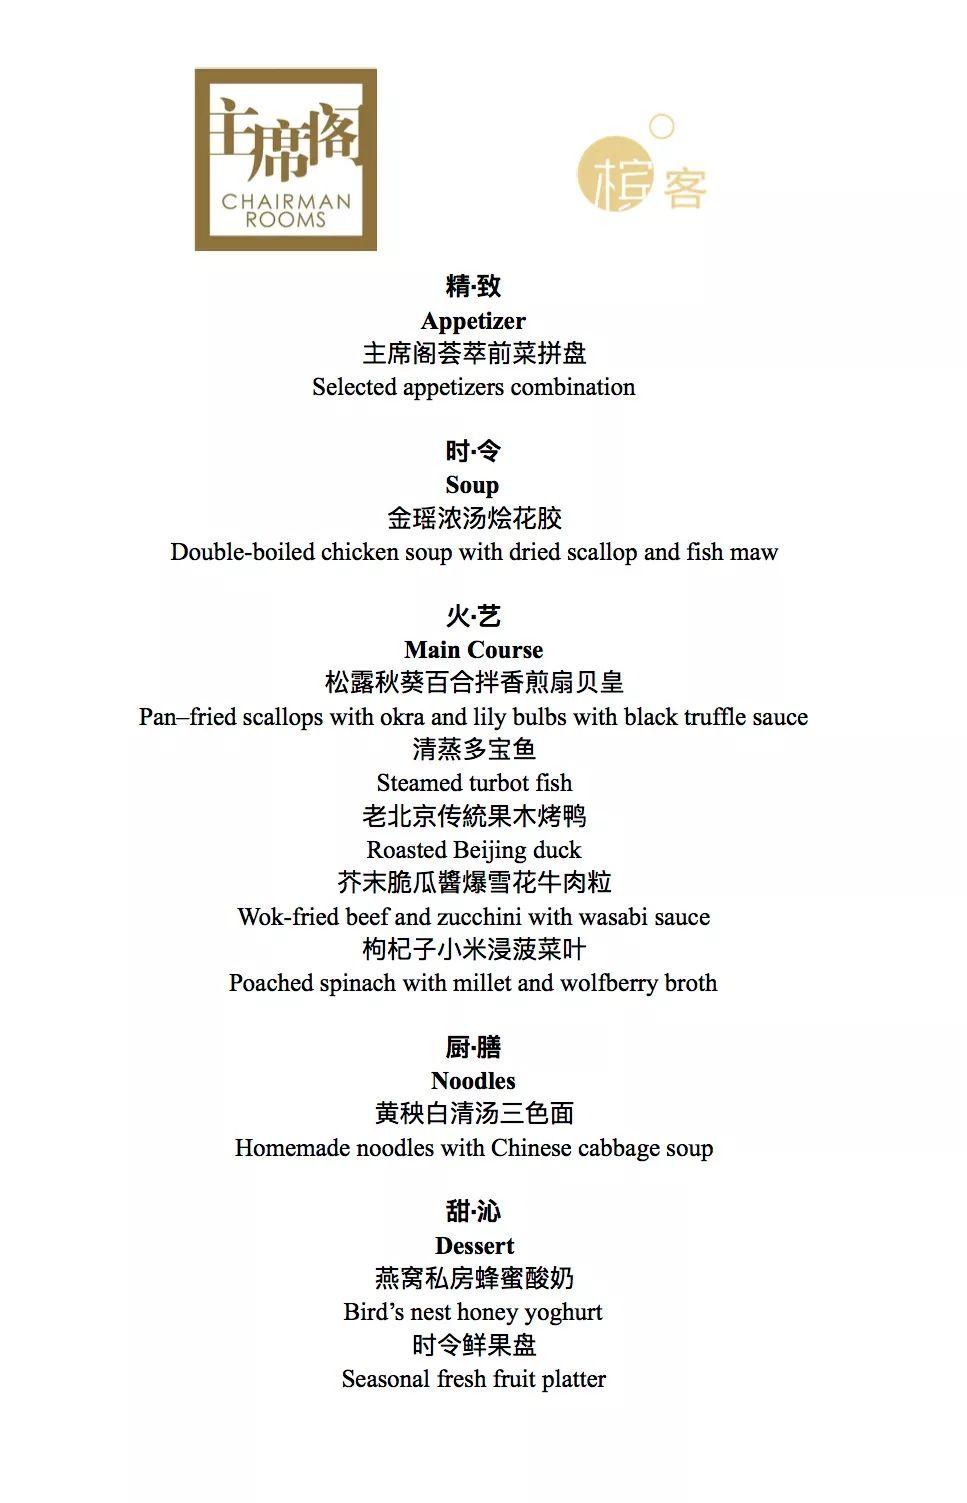 10月22日 晚宴 I 诚意满满的顶级小农香槟庄主来北京了！